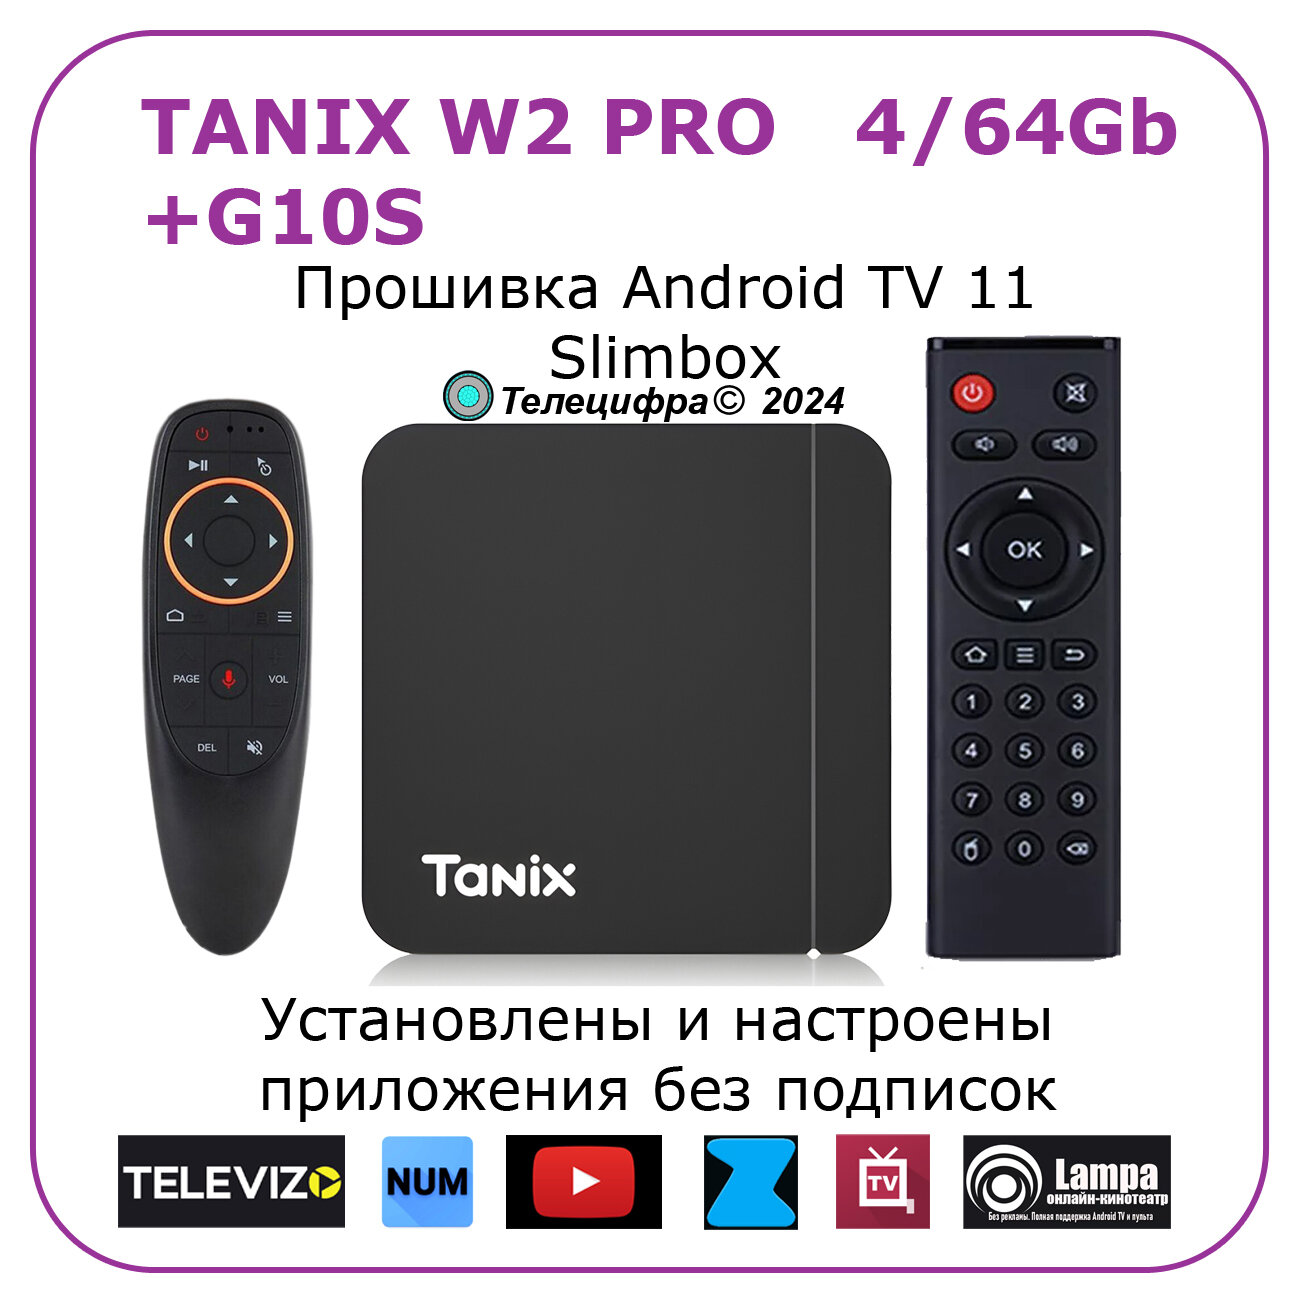 Tanix W2 PRO + G10S. Смарт ТВ приставка с голосовым управлением для телевизора Tanix W2 PRO с прошивкой SlimBox ATV 4/64 4K /Smart TV/Android 11/WI-FI 2.4&5G +универсальный пульт-аэромышь G10S